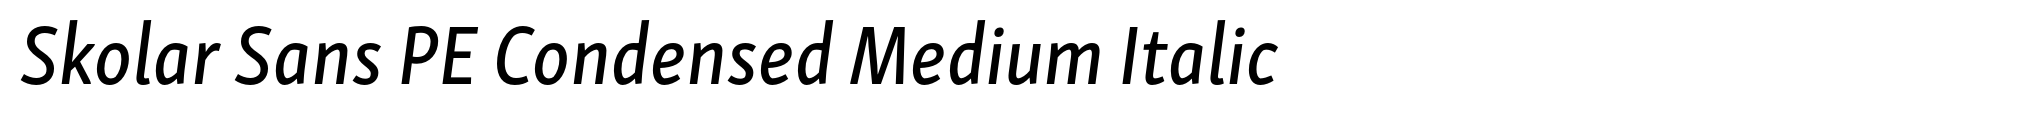 Skolar Sans PE Condensed Medium Italic image